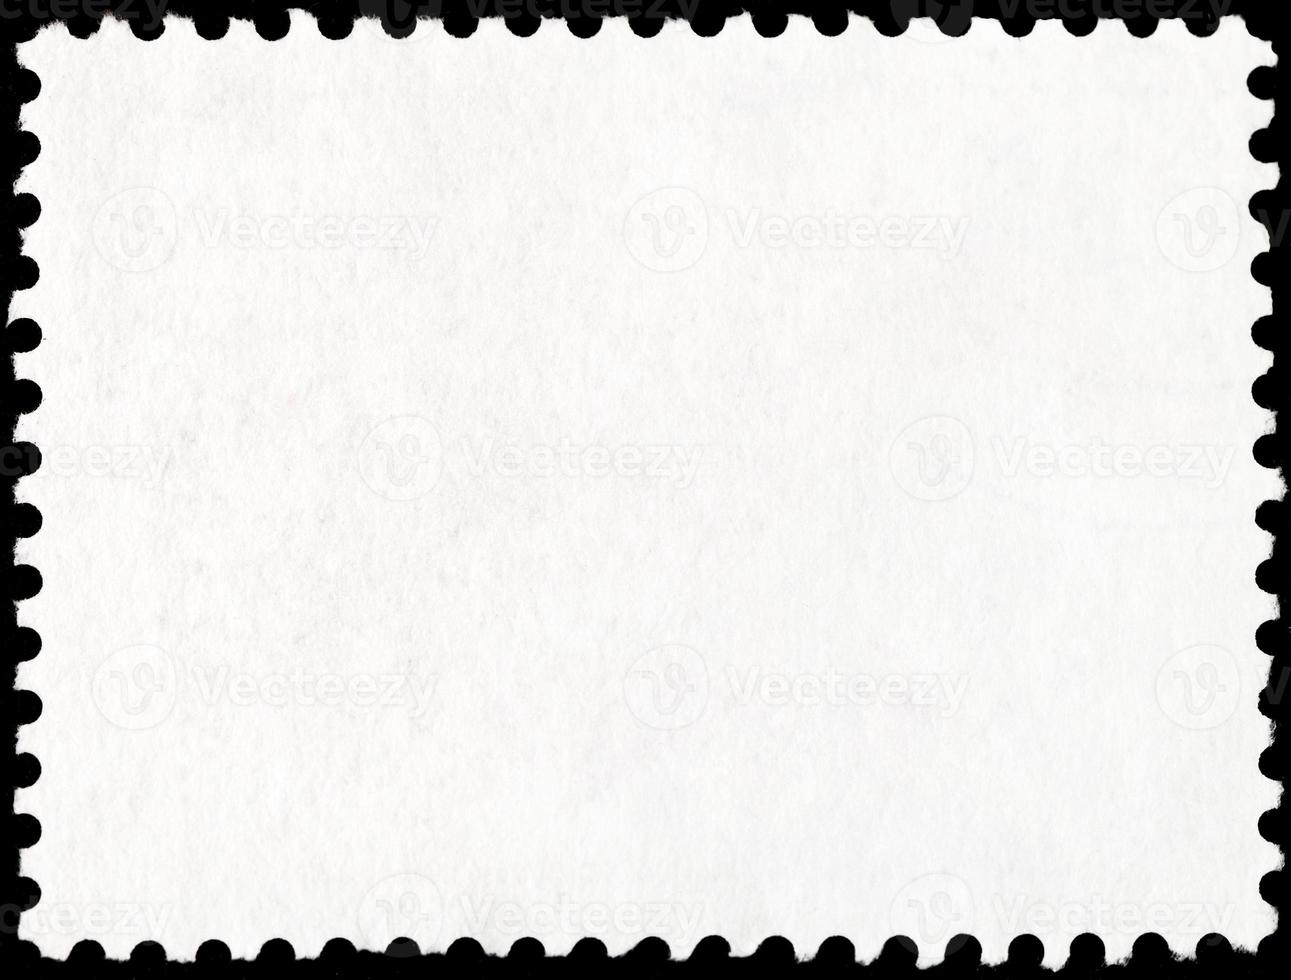 Hintergrund von der Rückseite der Briefmarke foto